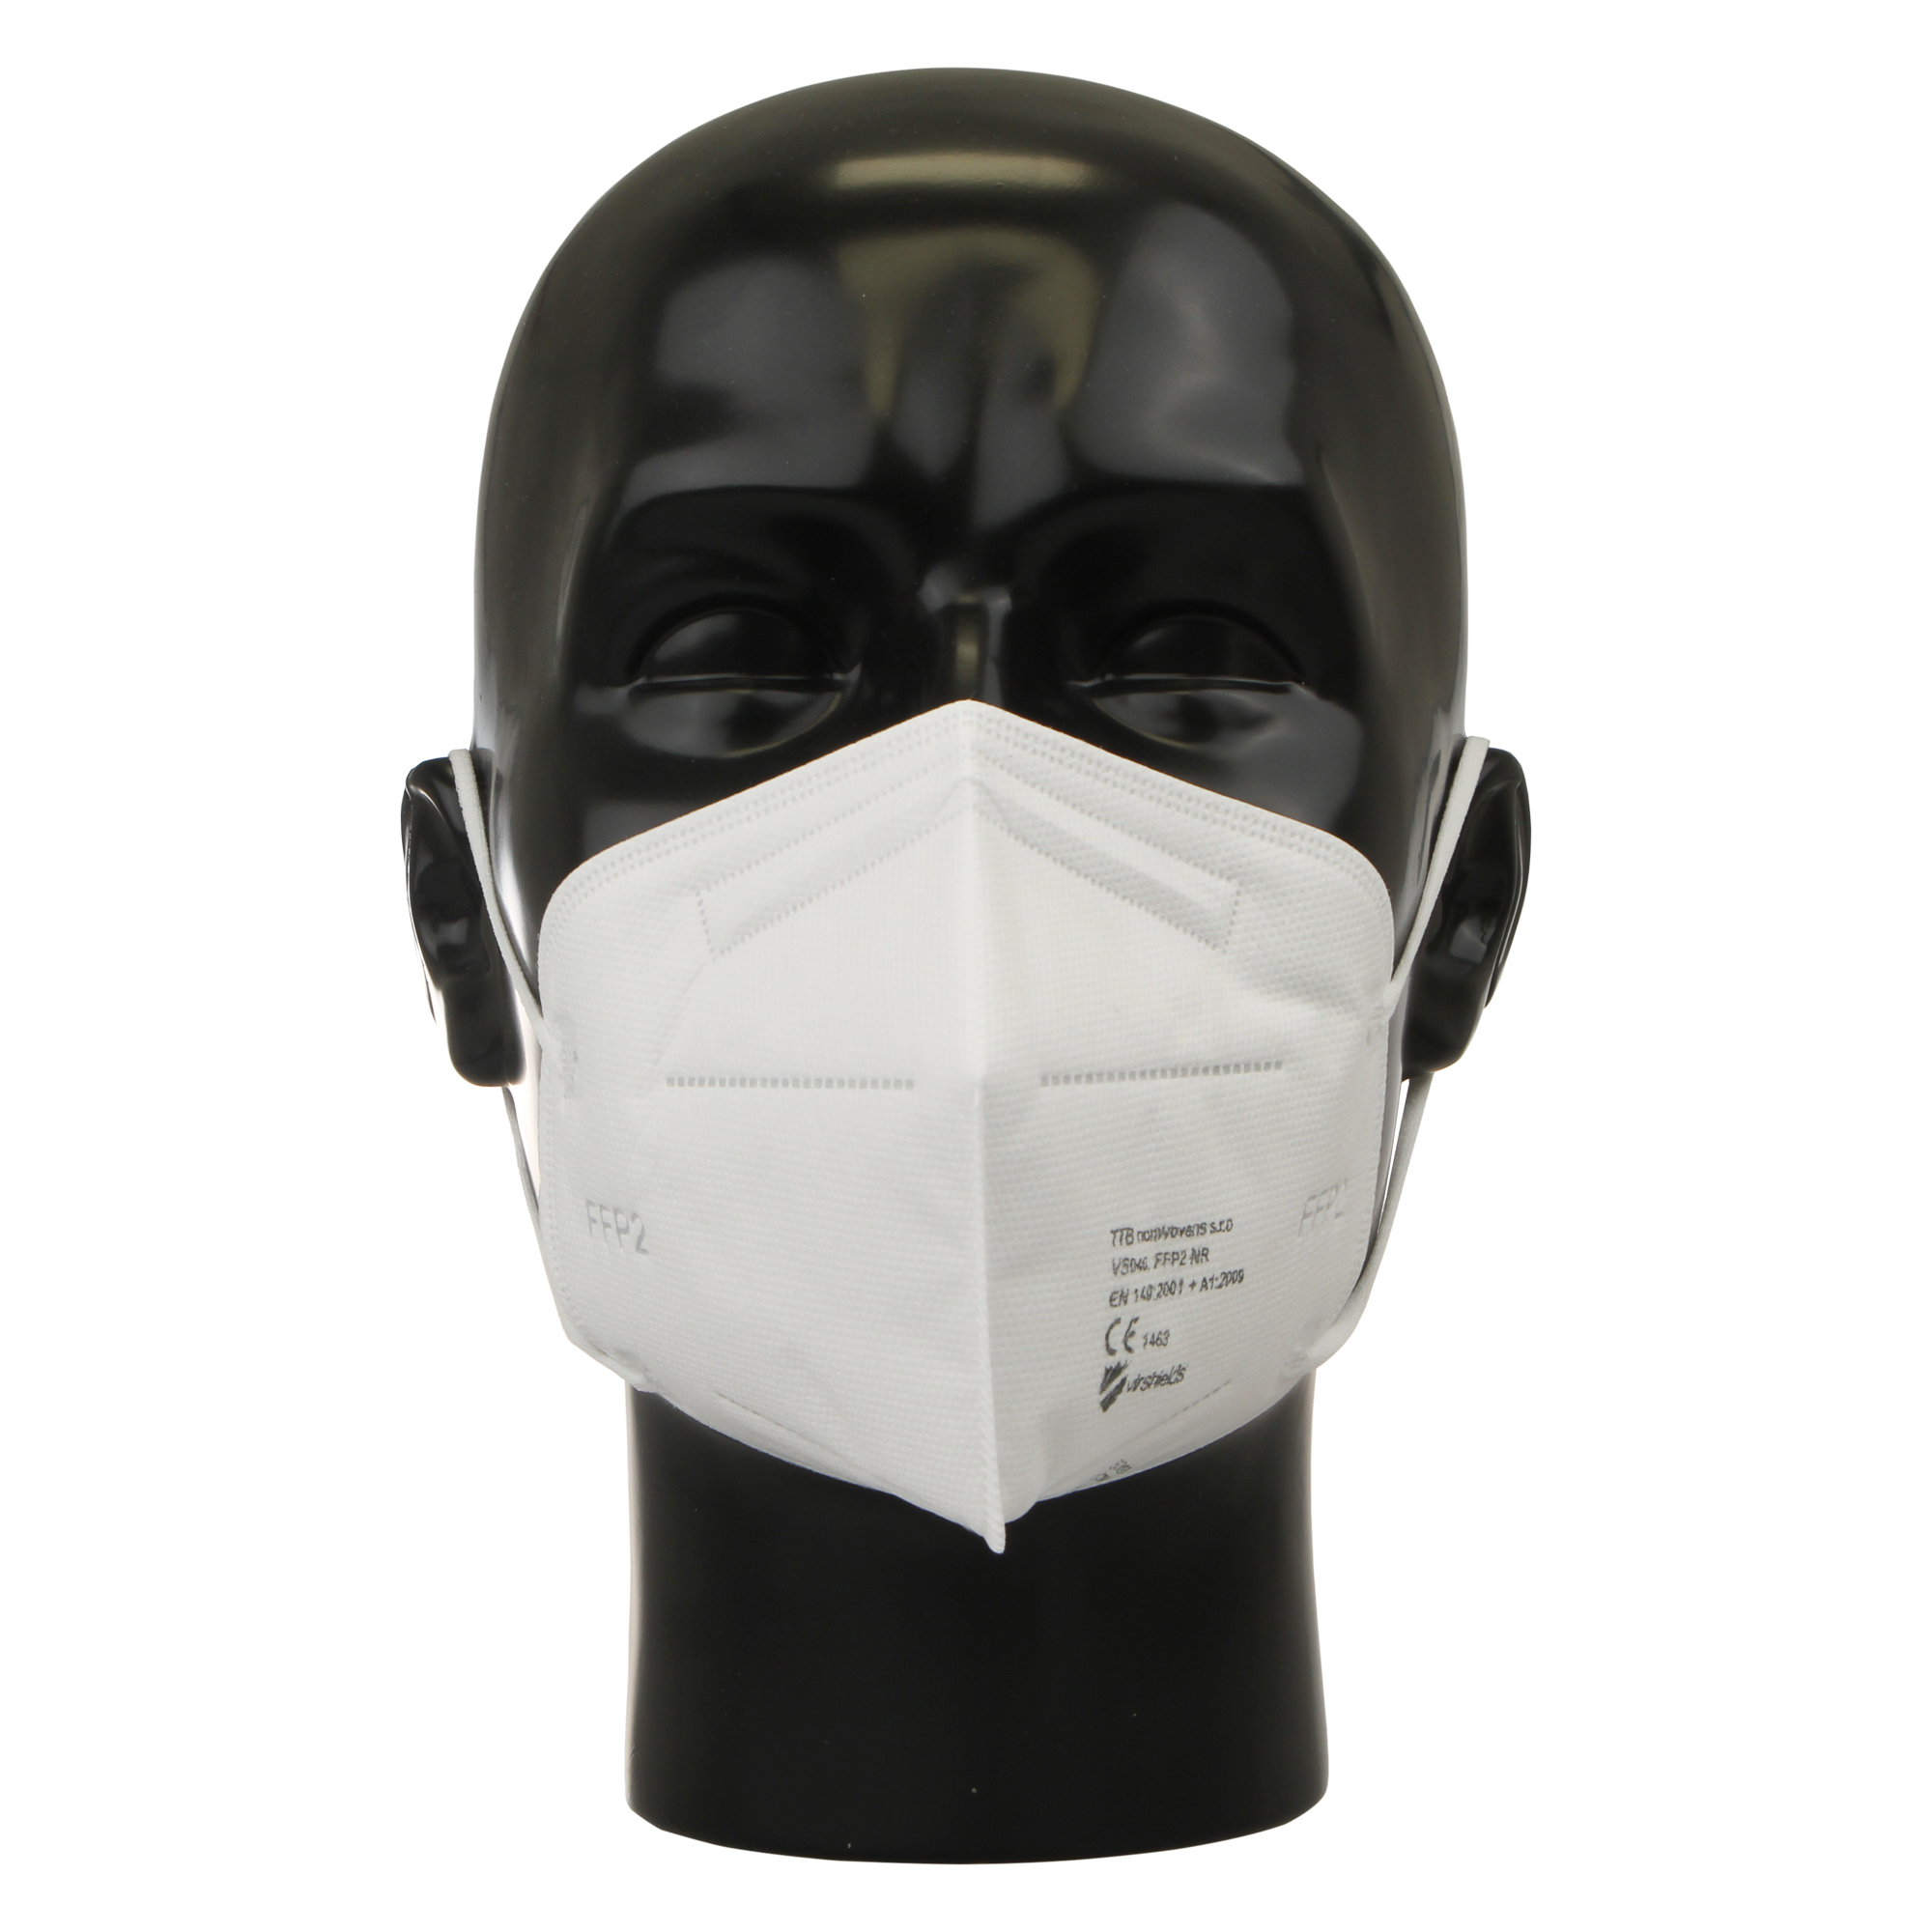 FFP2 Maske VIRSHIELDS - Besonders saugfähige FFP2 Maske. Made in EU. Schwarz oder Weiß. 10 Stück.